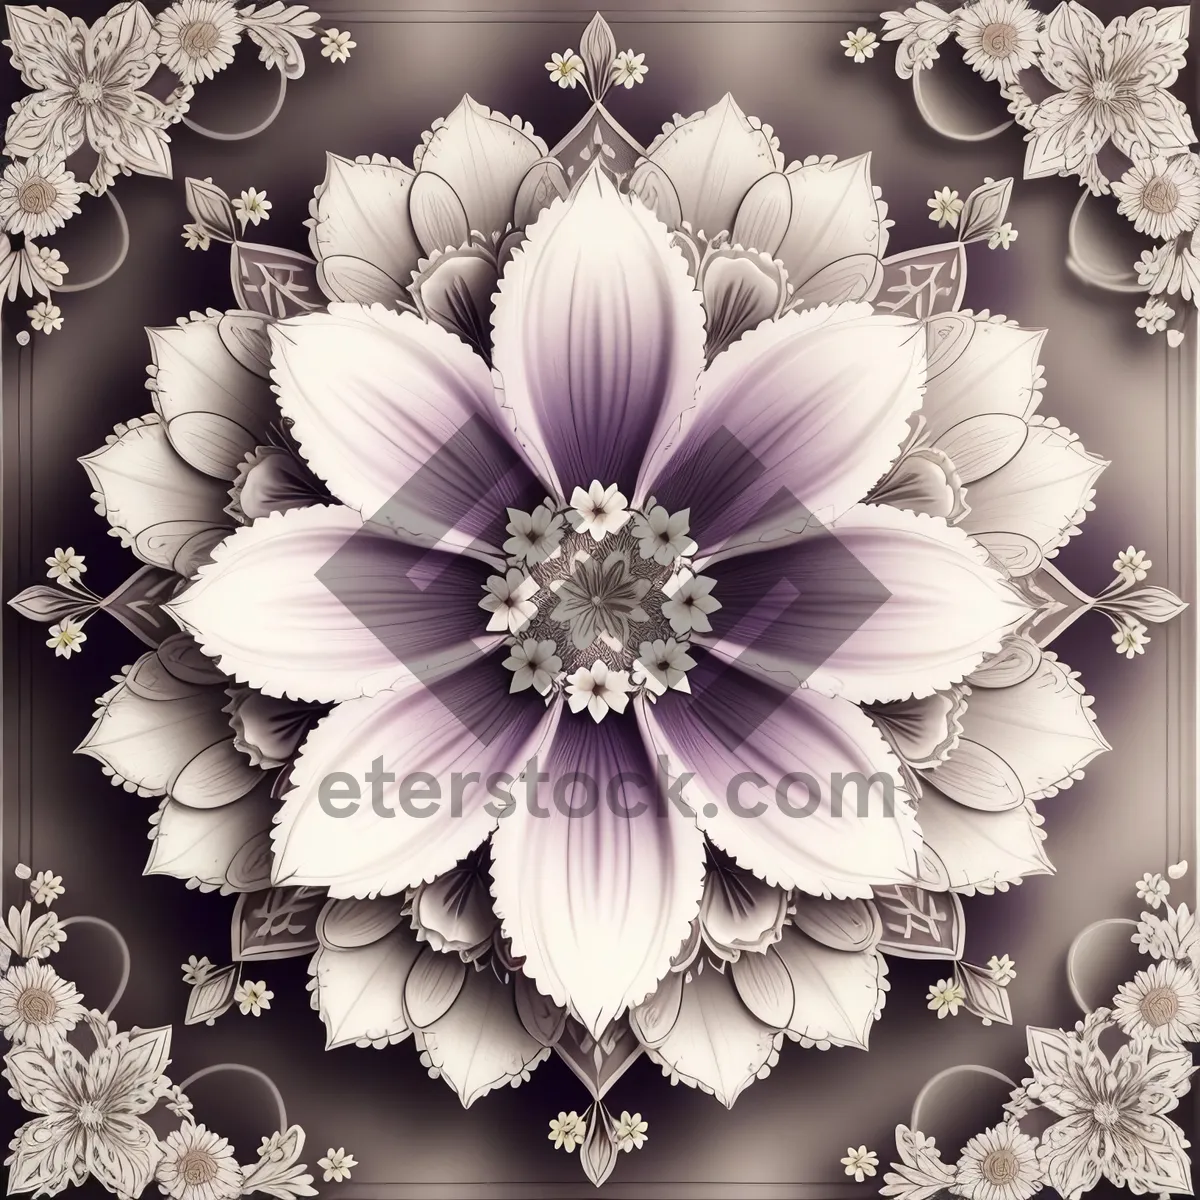 Picture of Floral Ornate Vintage Wallpaper Design